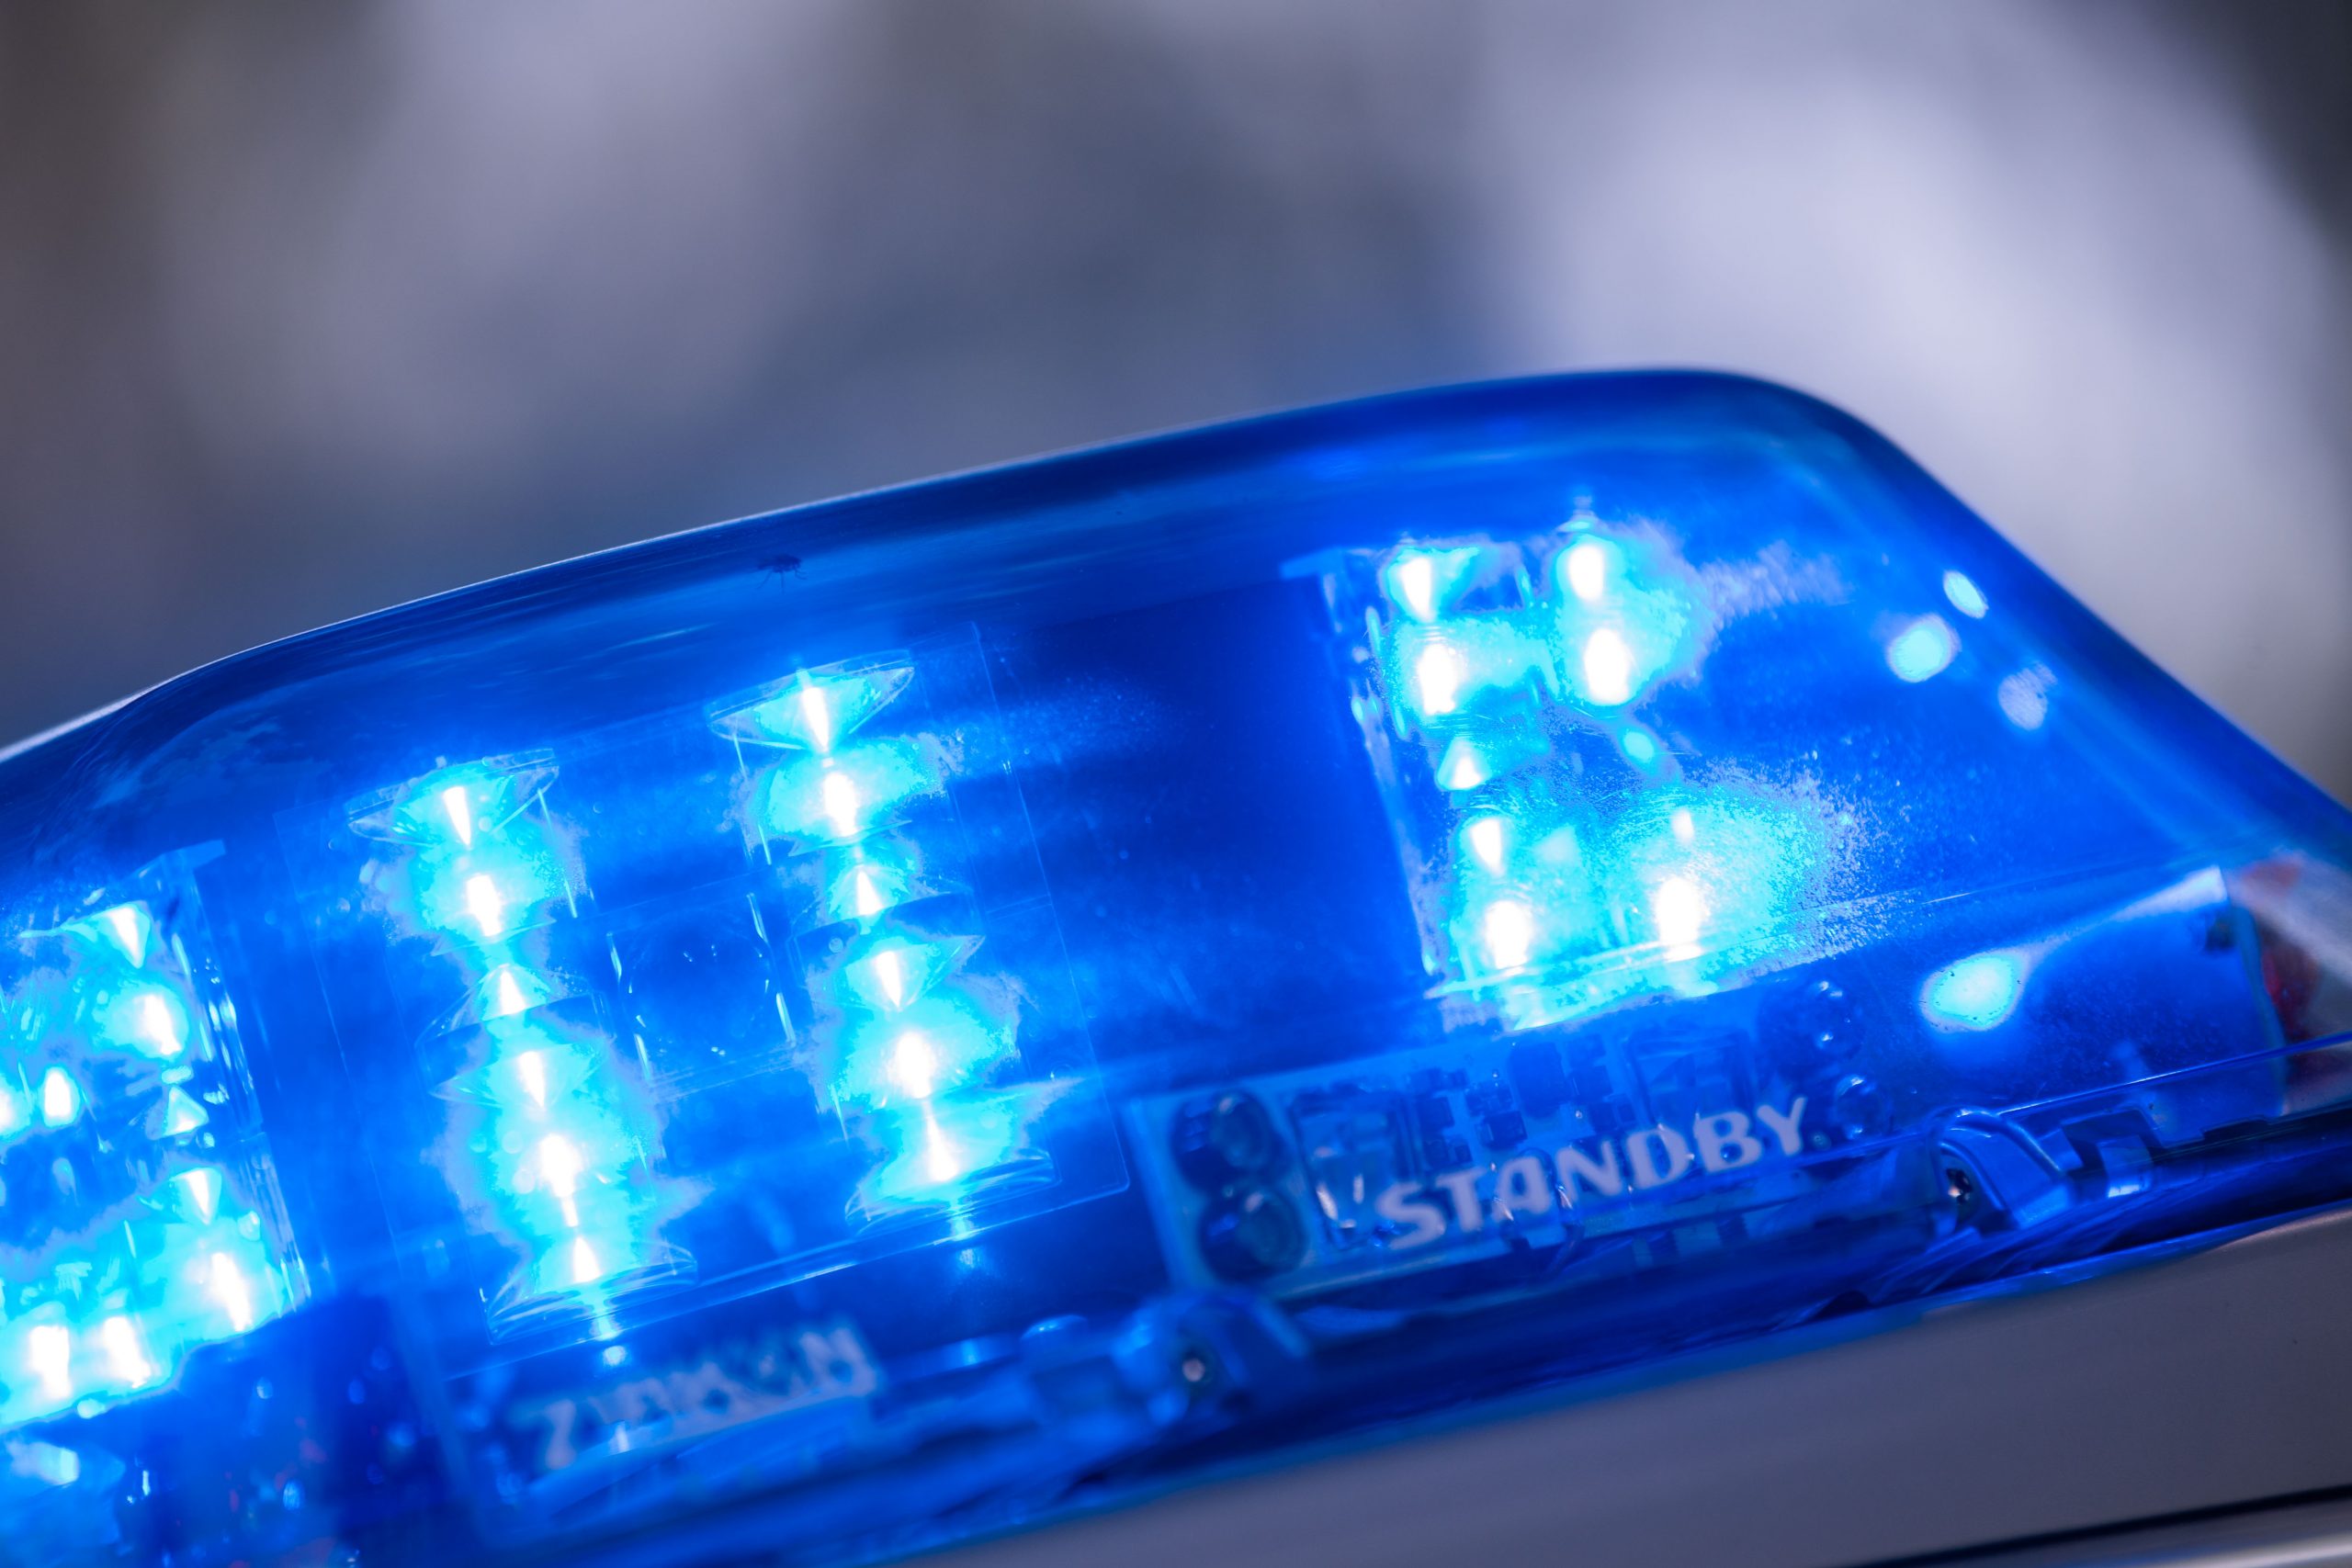 Das Blaulicht eines Polizeiautos (Symbolbild)